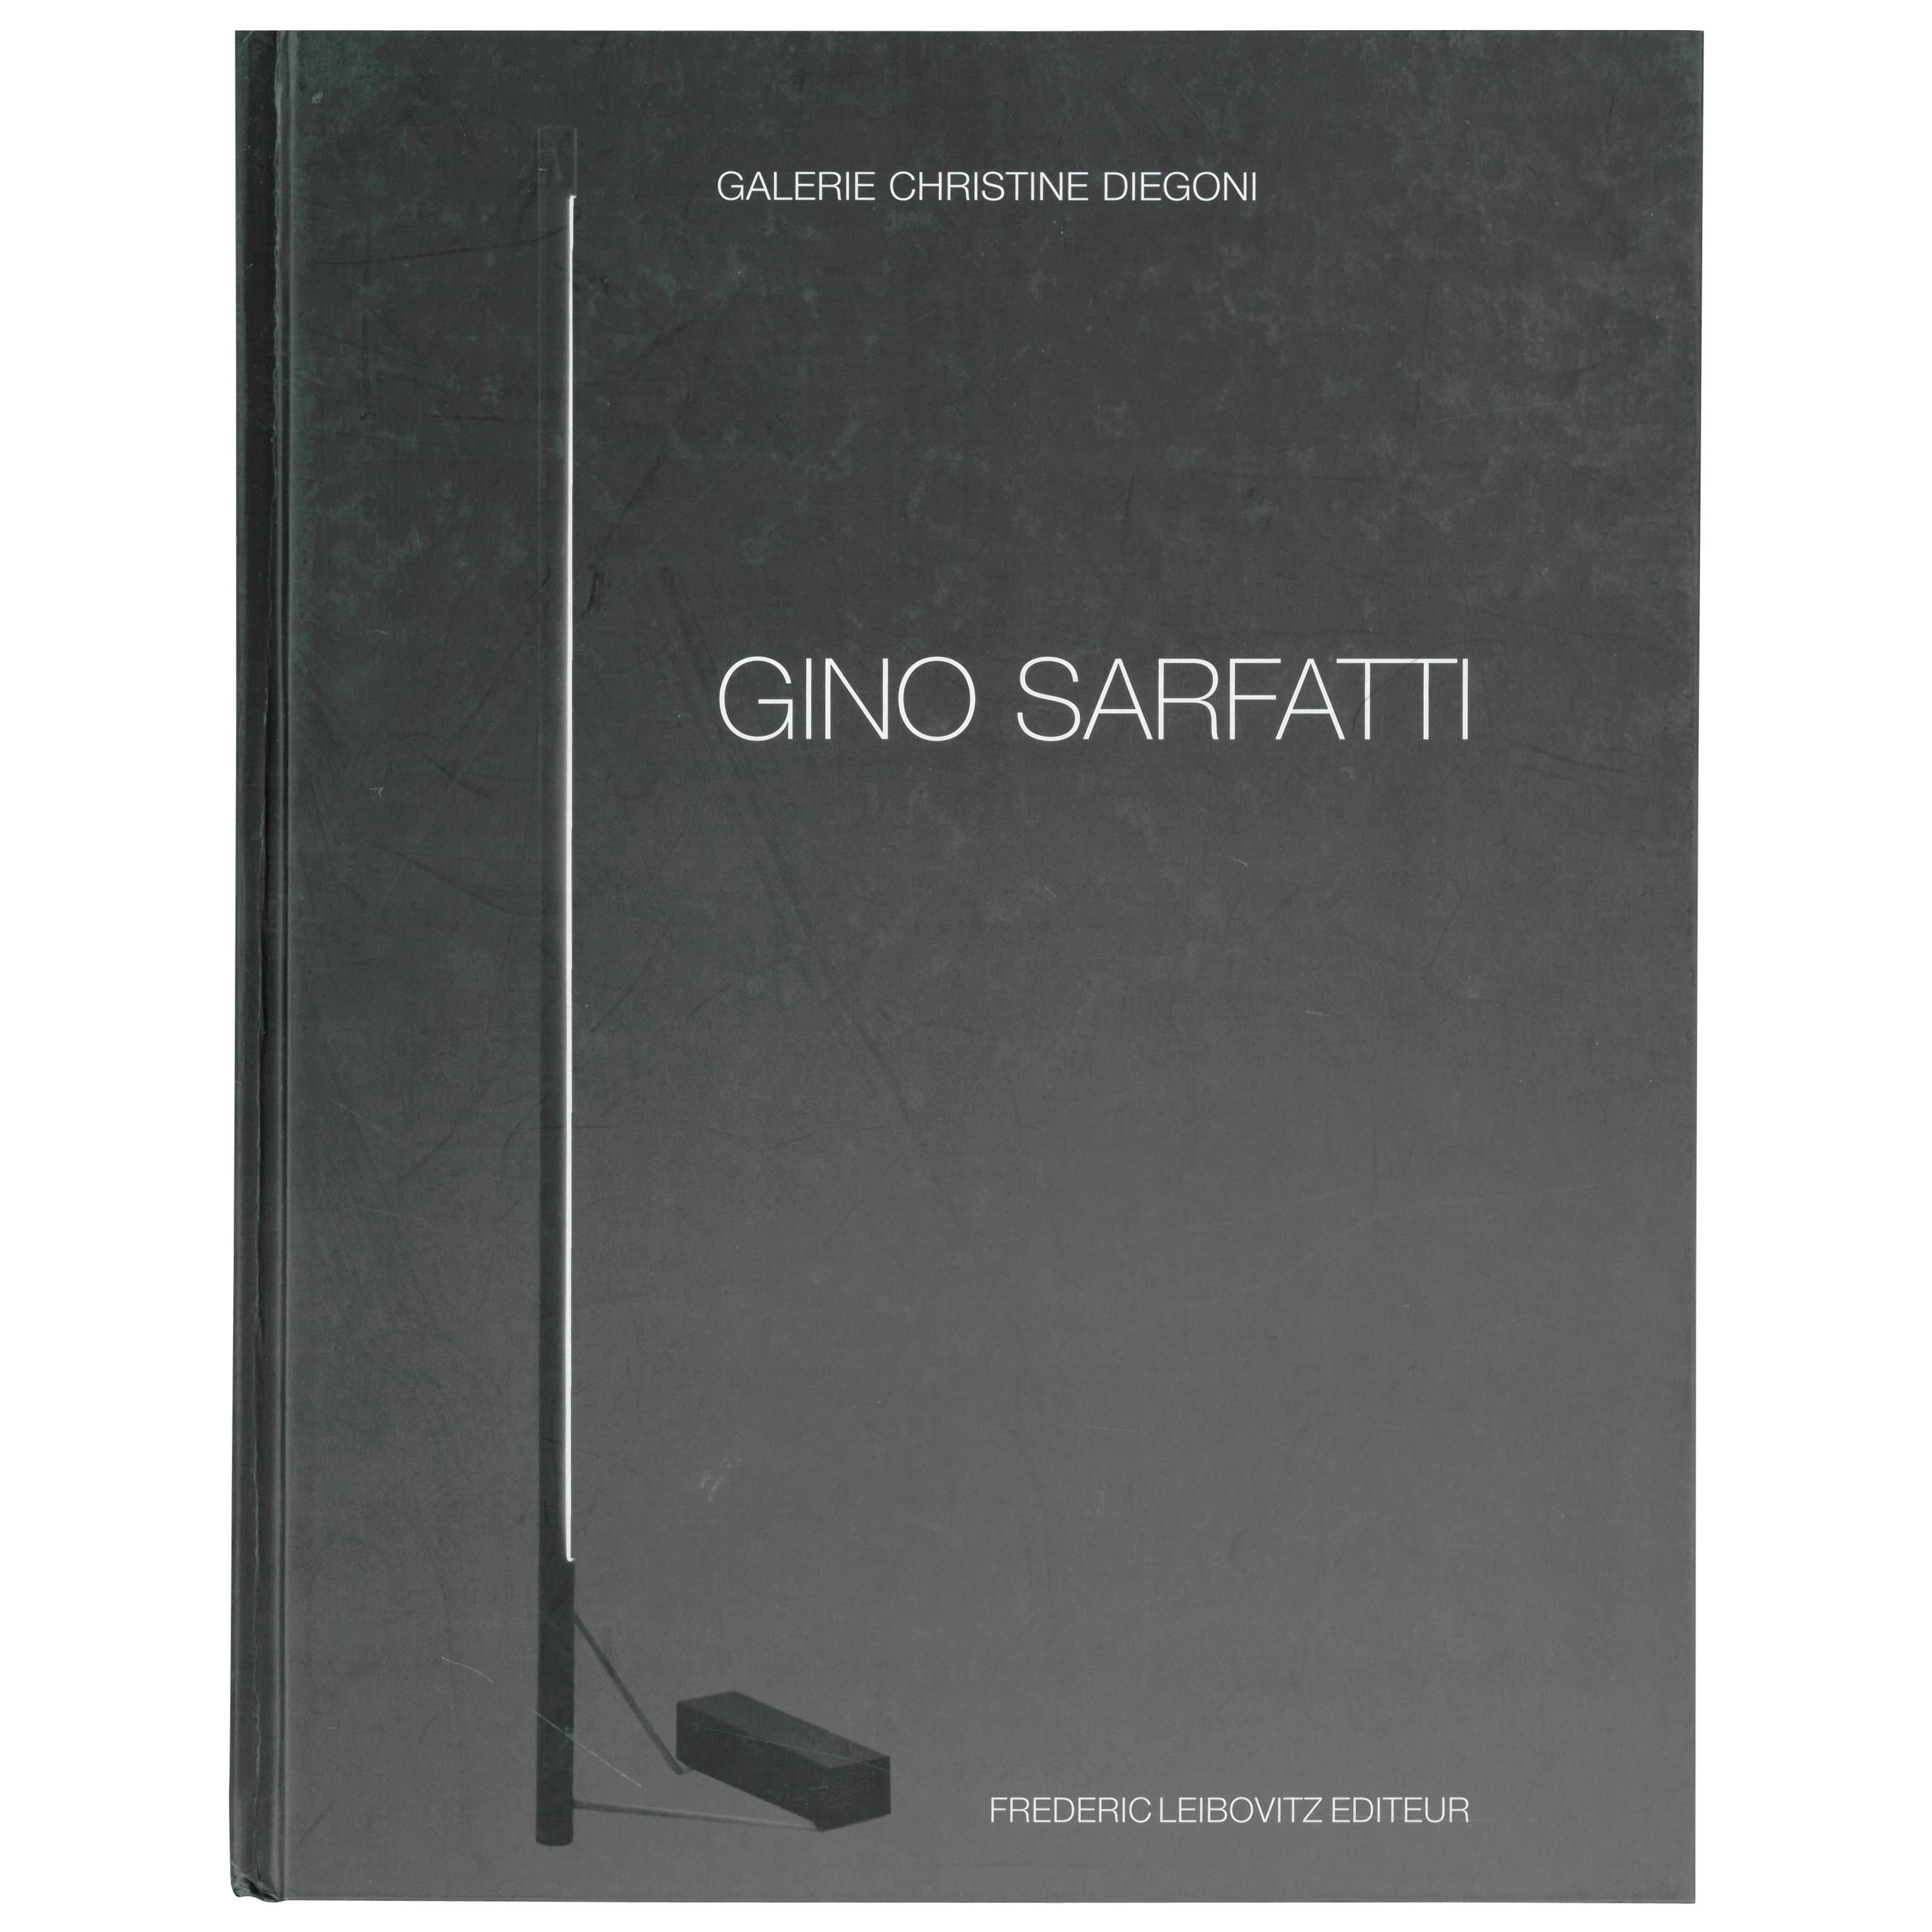 Gino Sarfatti by Frederic Leibovitz (Book)